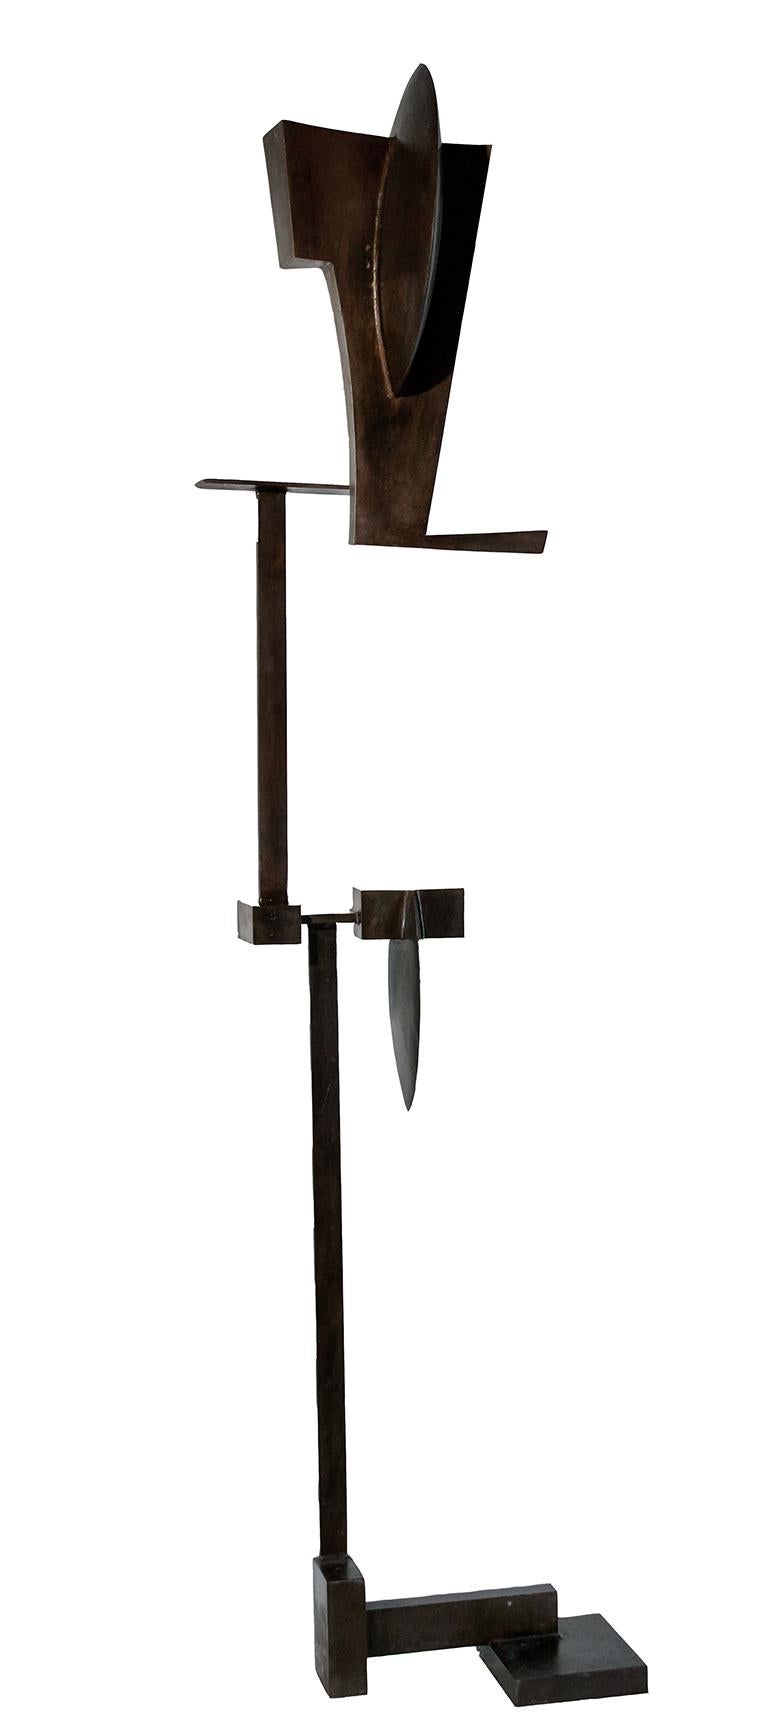 Sculpture géométrique abstraite minimaliste sur pied en acier oxydé brun foncé.
"Some Guy #2" de Joe Wheaton, réalisé en 2005
acier oxydé, 80 x 17.5 x 15 pouces
Sculpture autoportante avec base stable
La signature et la date de l'artiste se trouvent